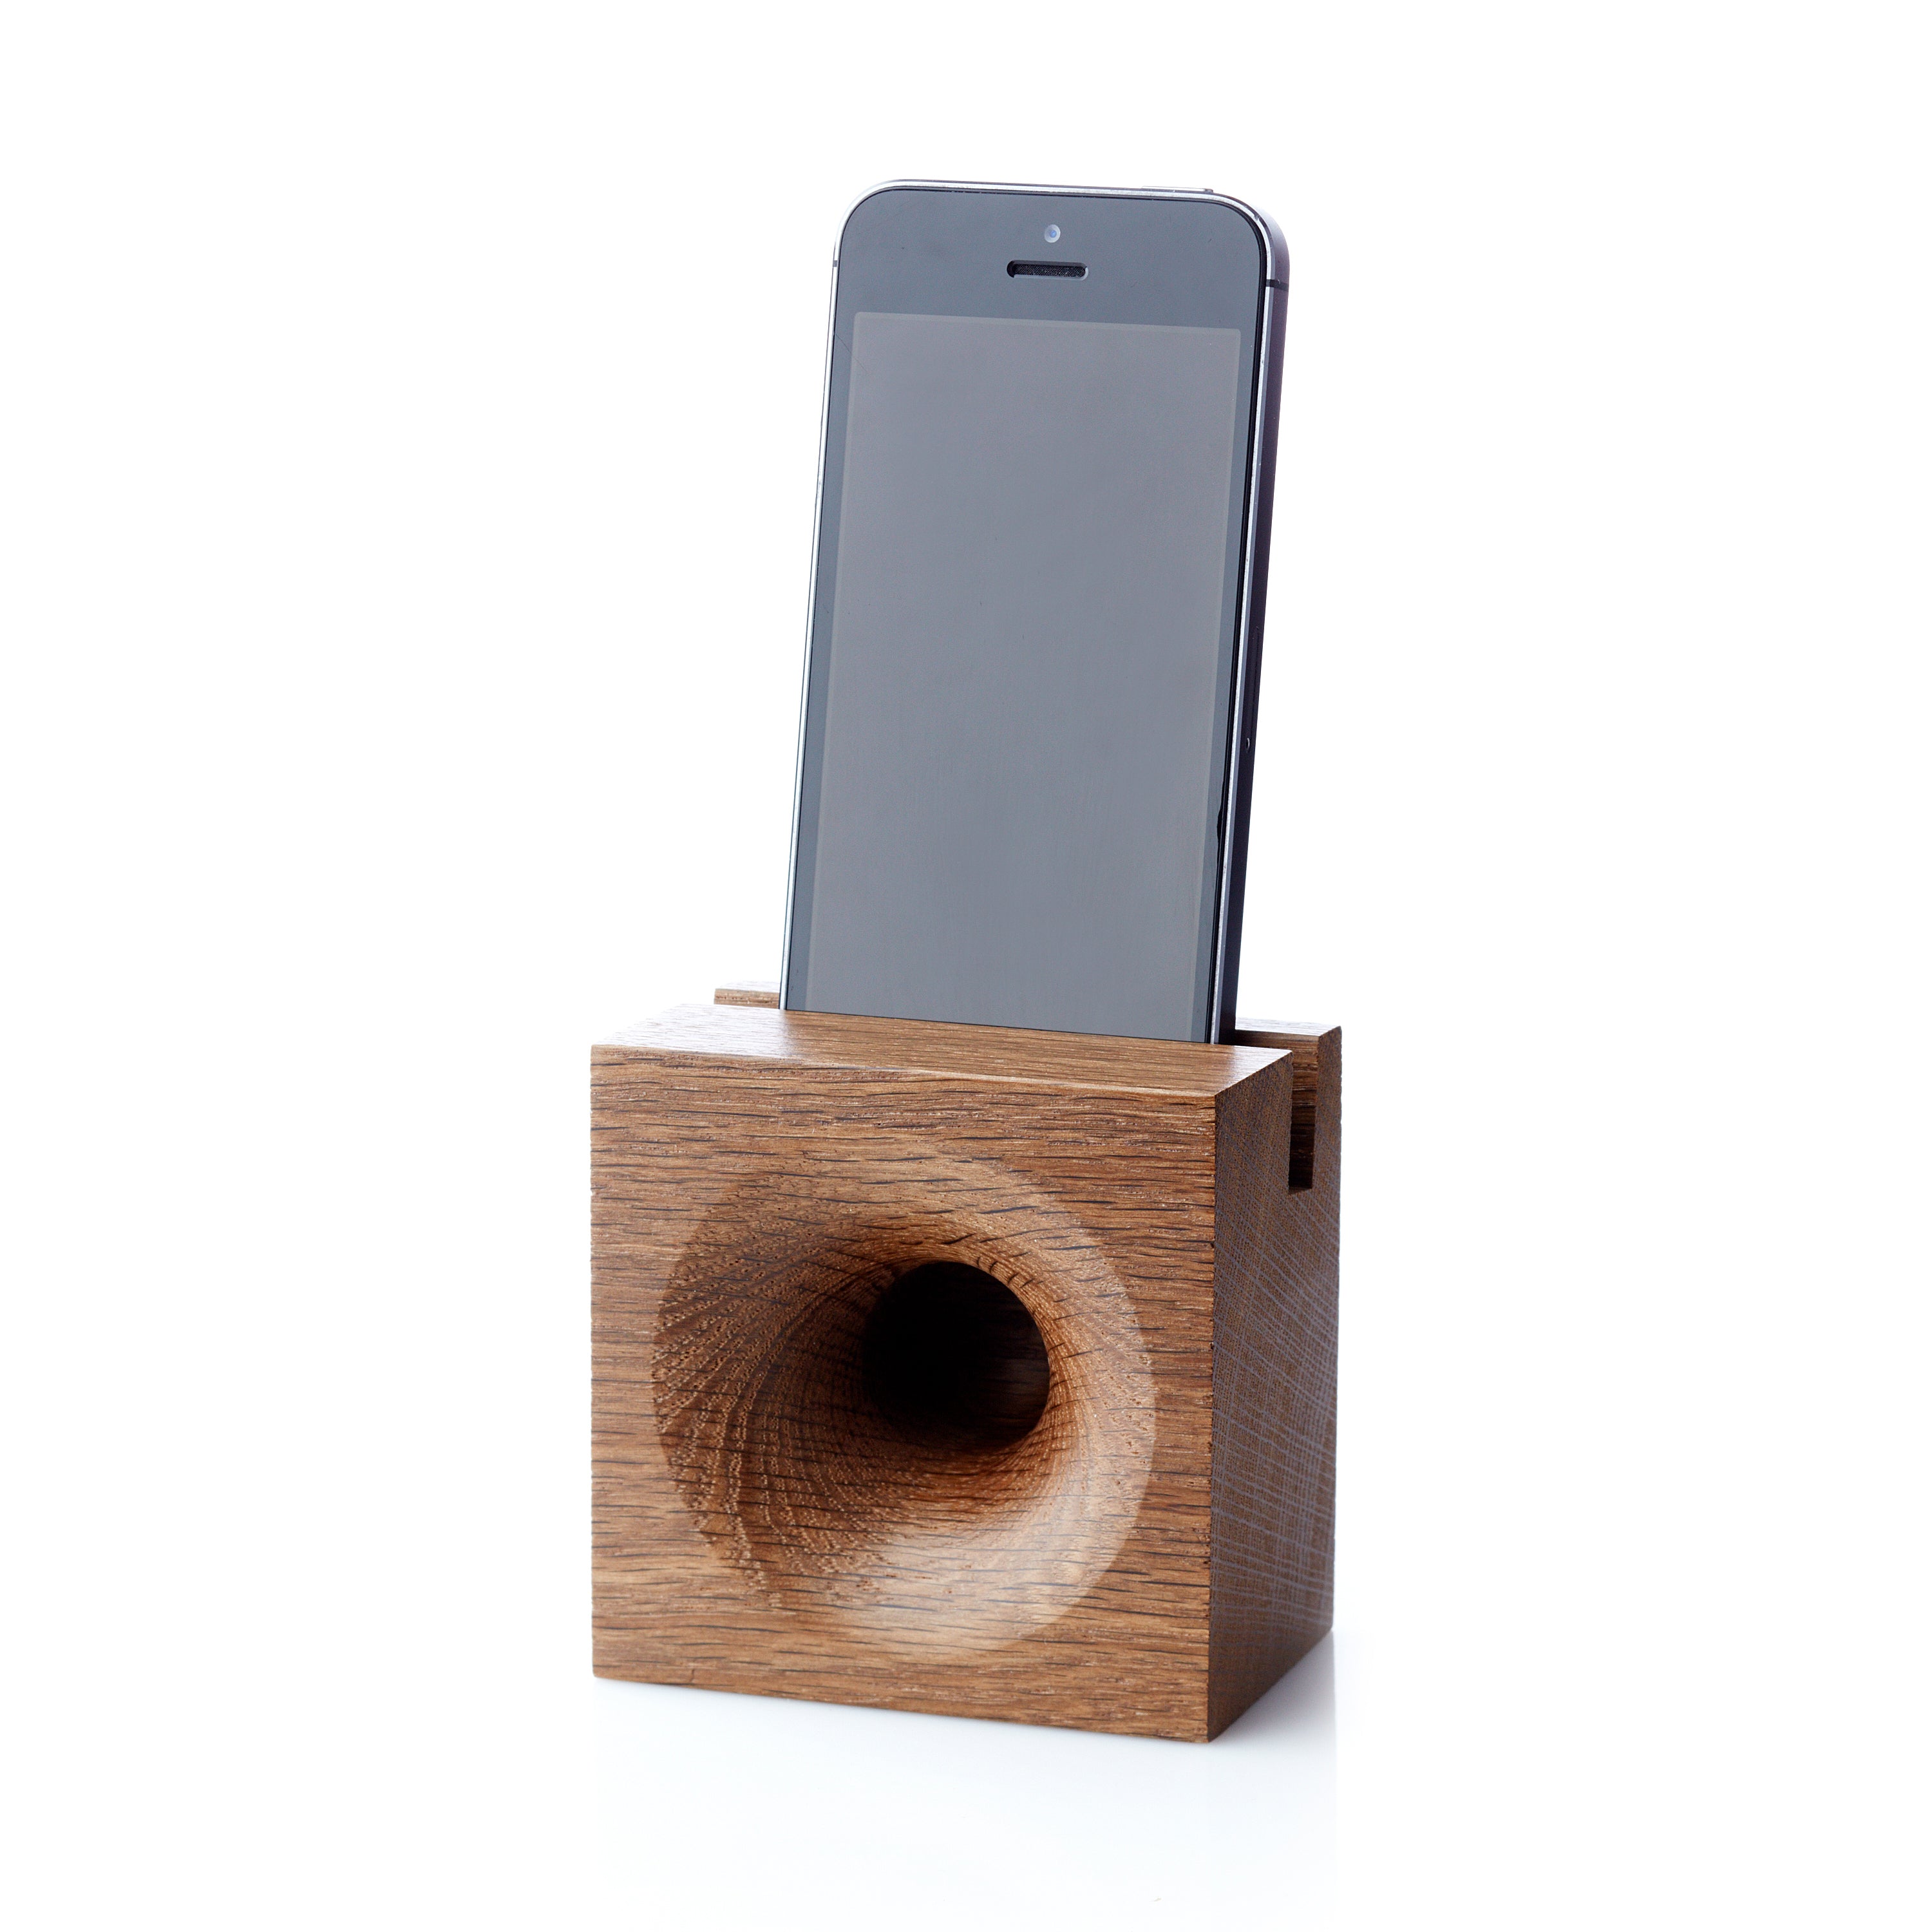 Conflict gezagvoerder Verward zijn We Do Wood Sono Ambra Speaker/Sound Amplifier for Mobile Phone - 2Modern